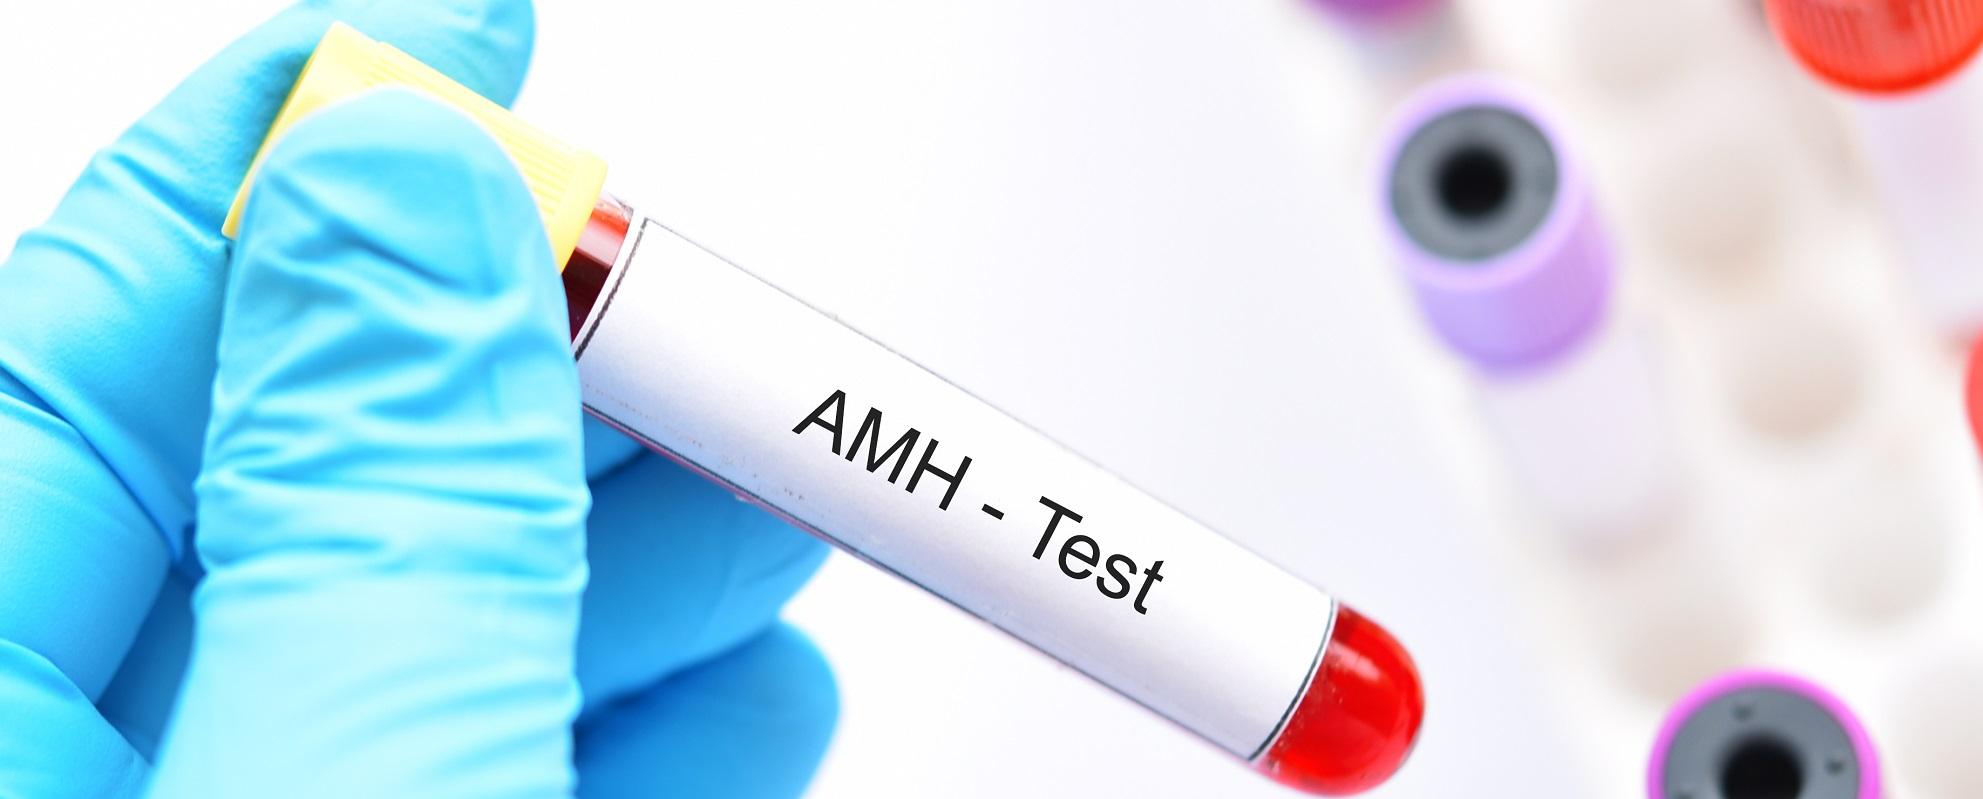 Что происходит в тесте AMH?